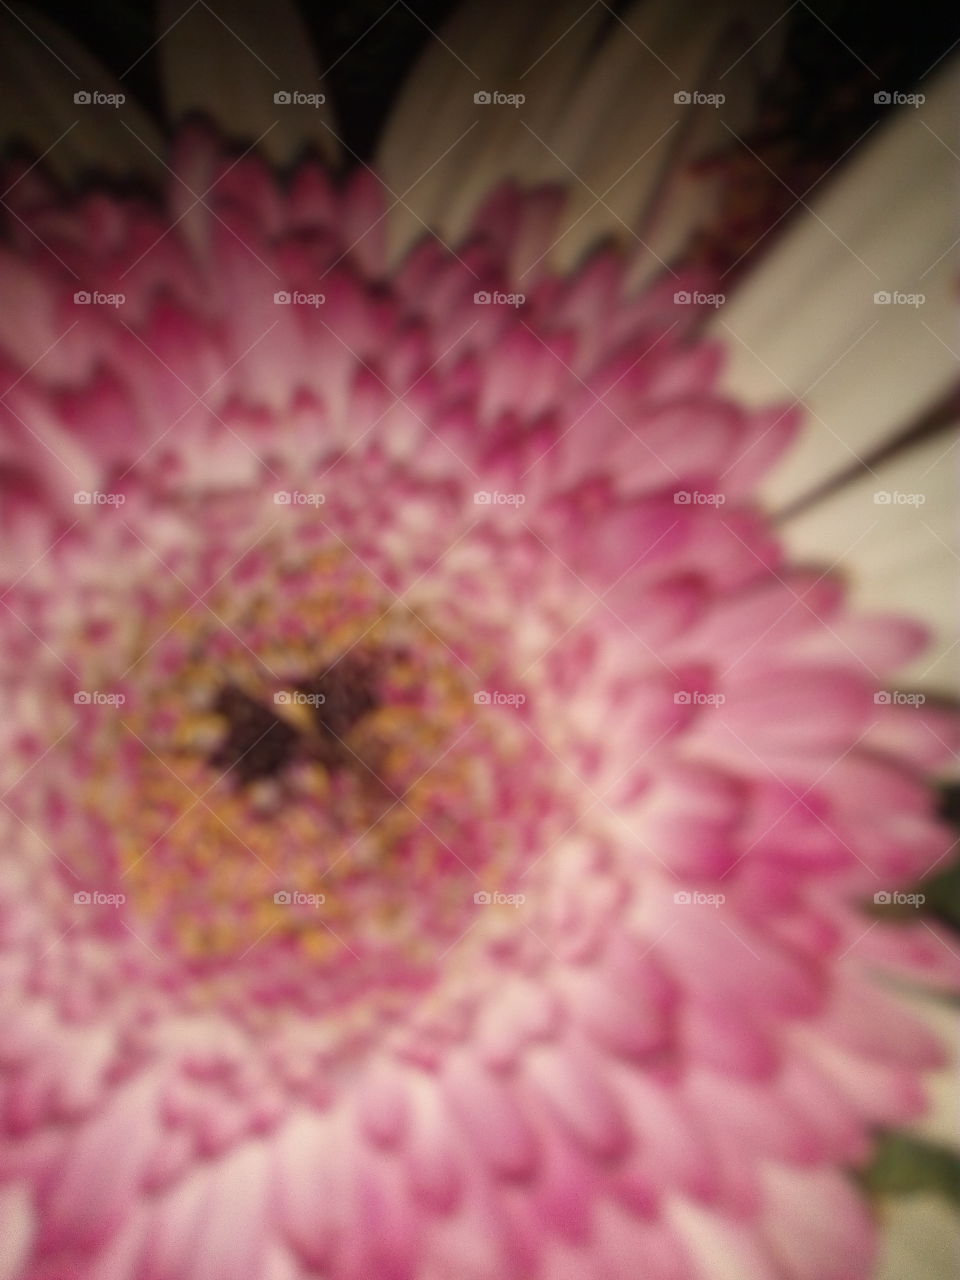 flower zoom in